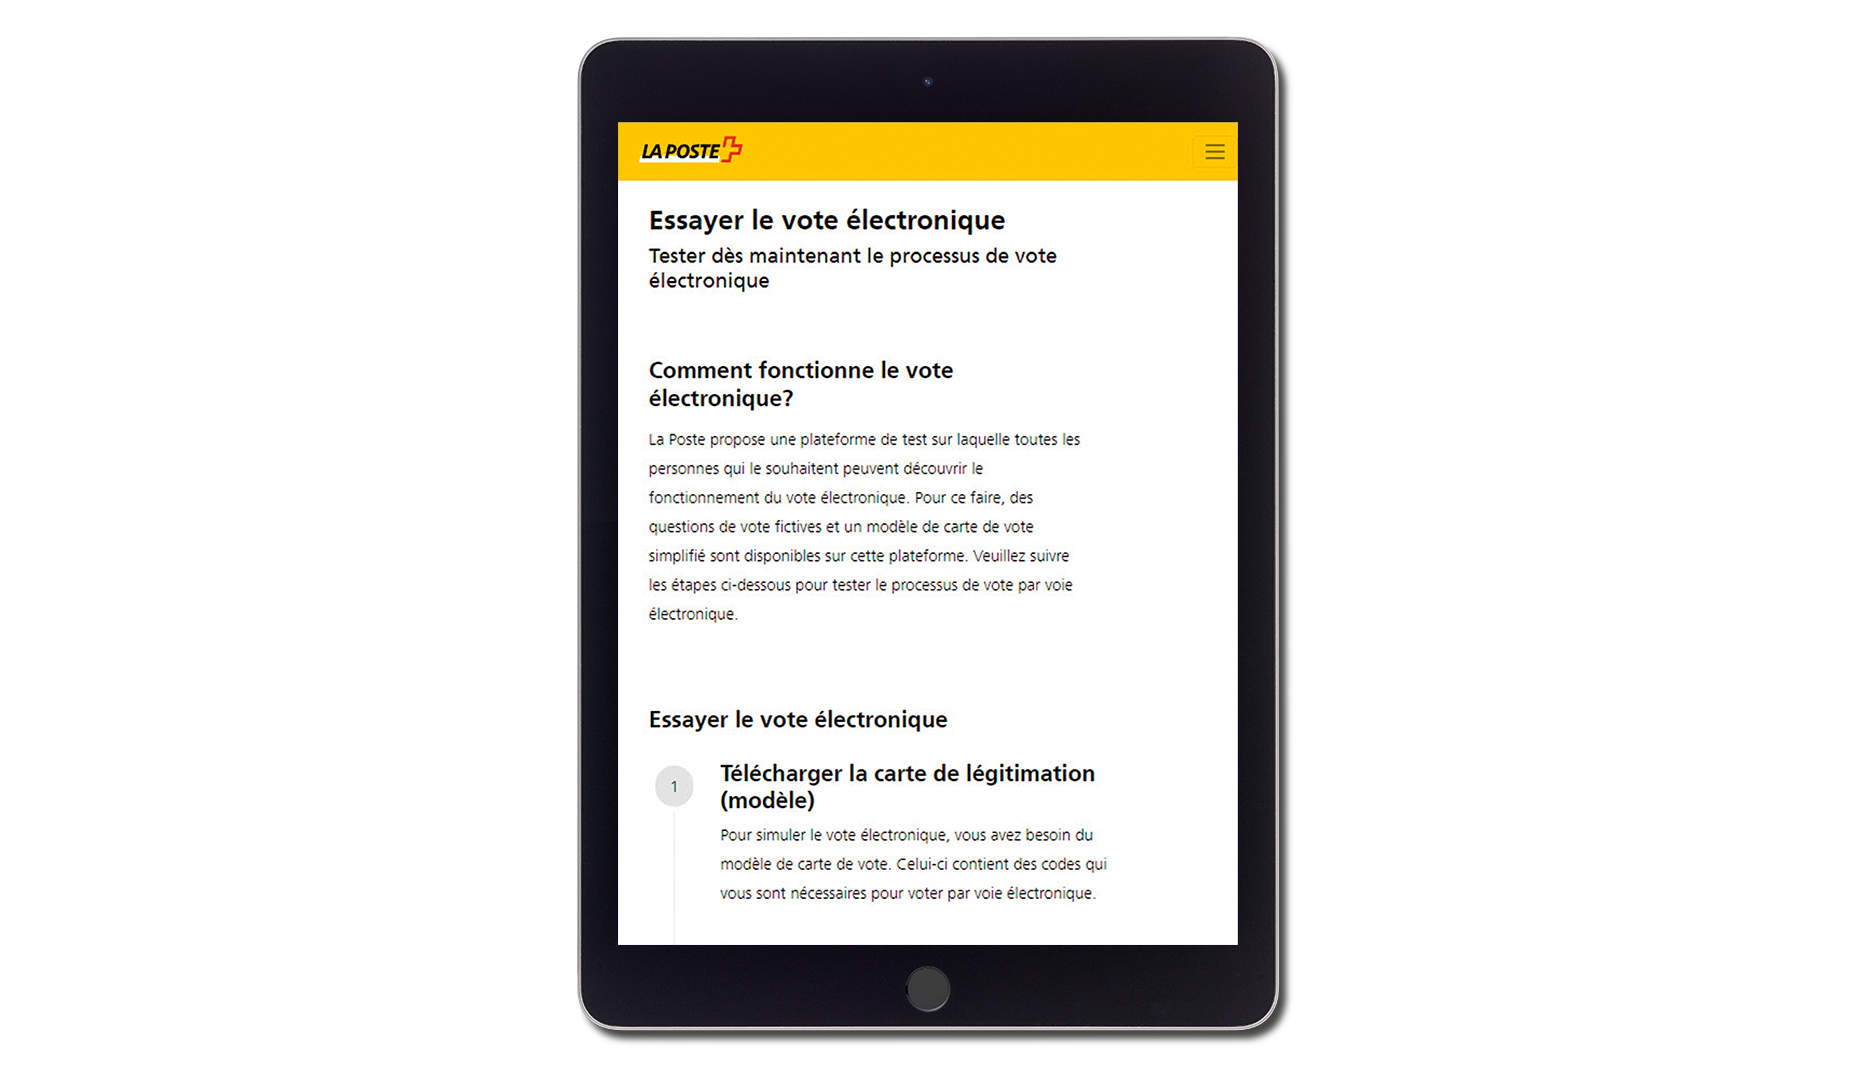 Plataforma de La Post para probar el voto electrónico